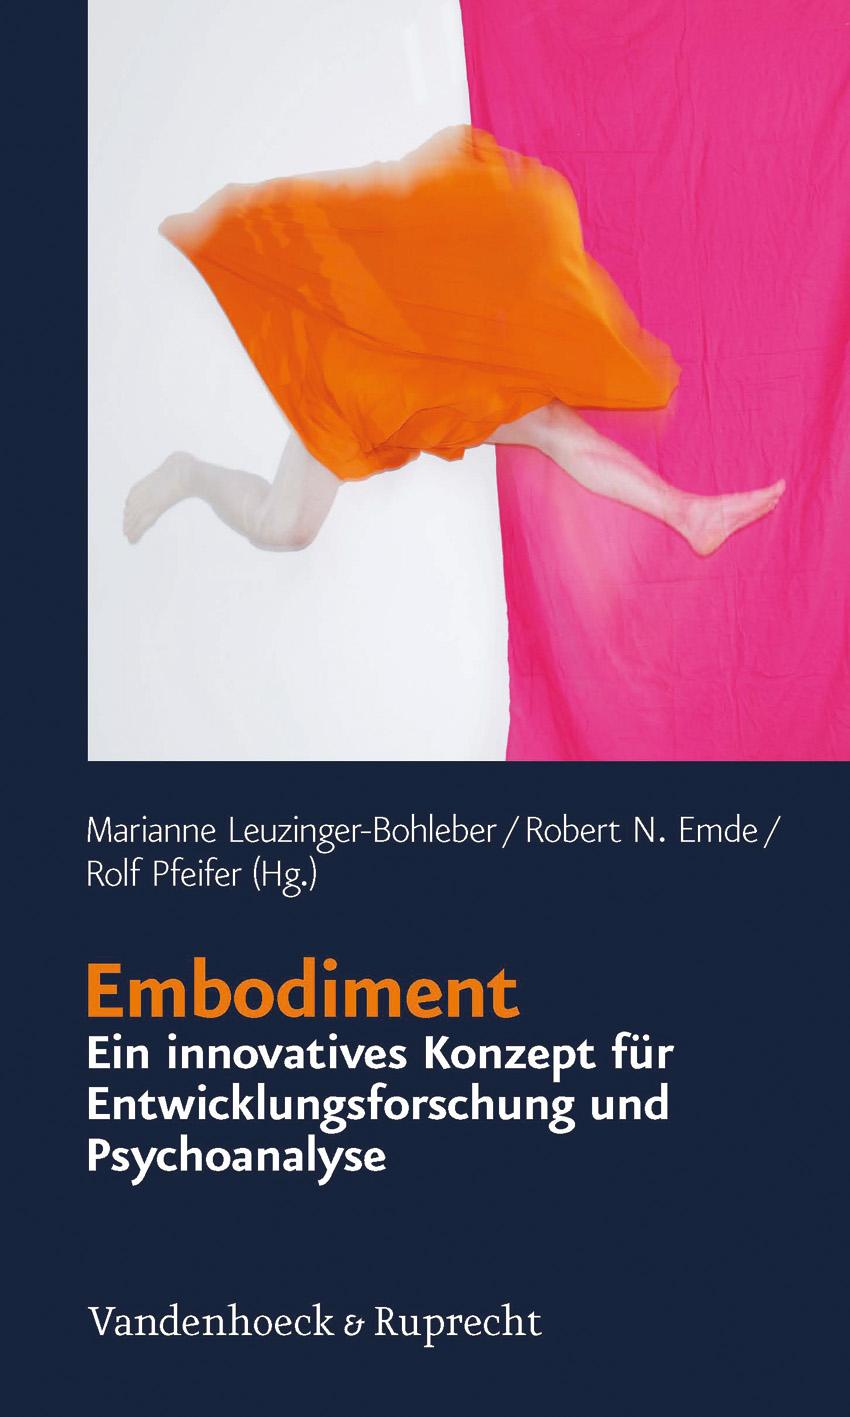 Embodiment - ein innovatives Konzept für Entwicklungsforschung und Psychoanalyse